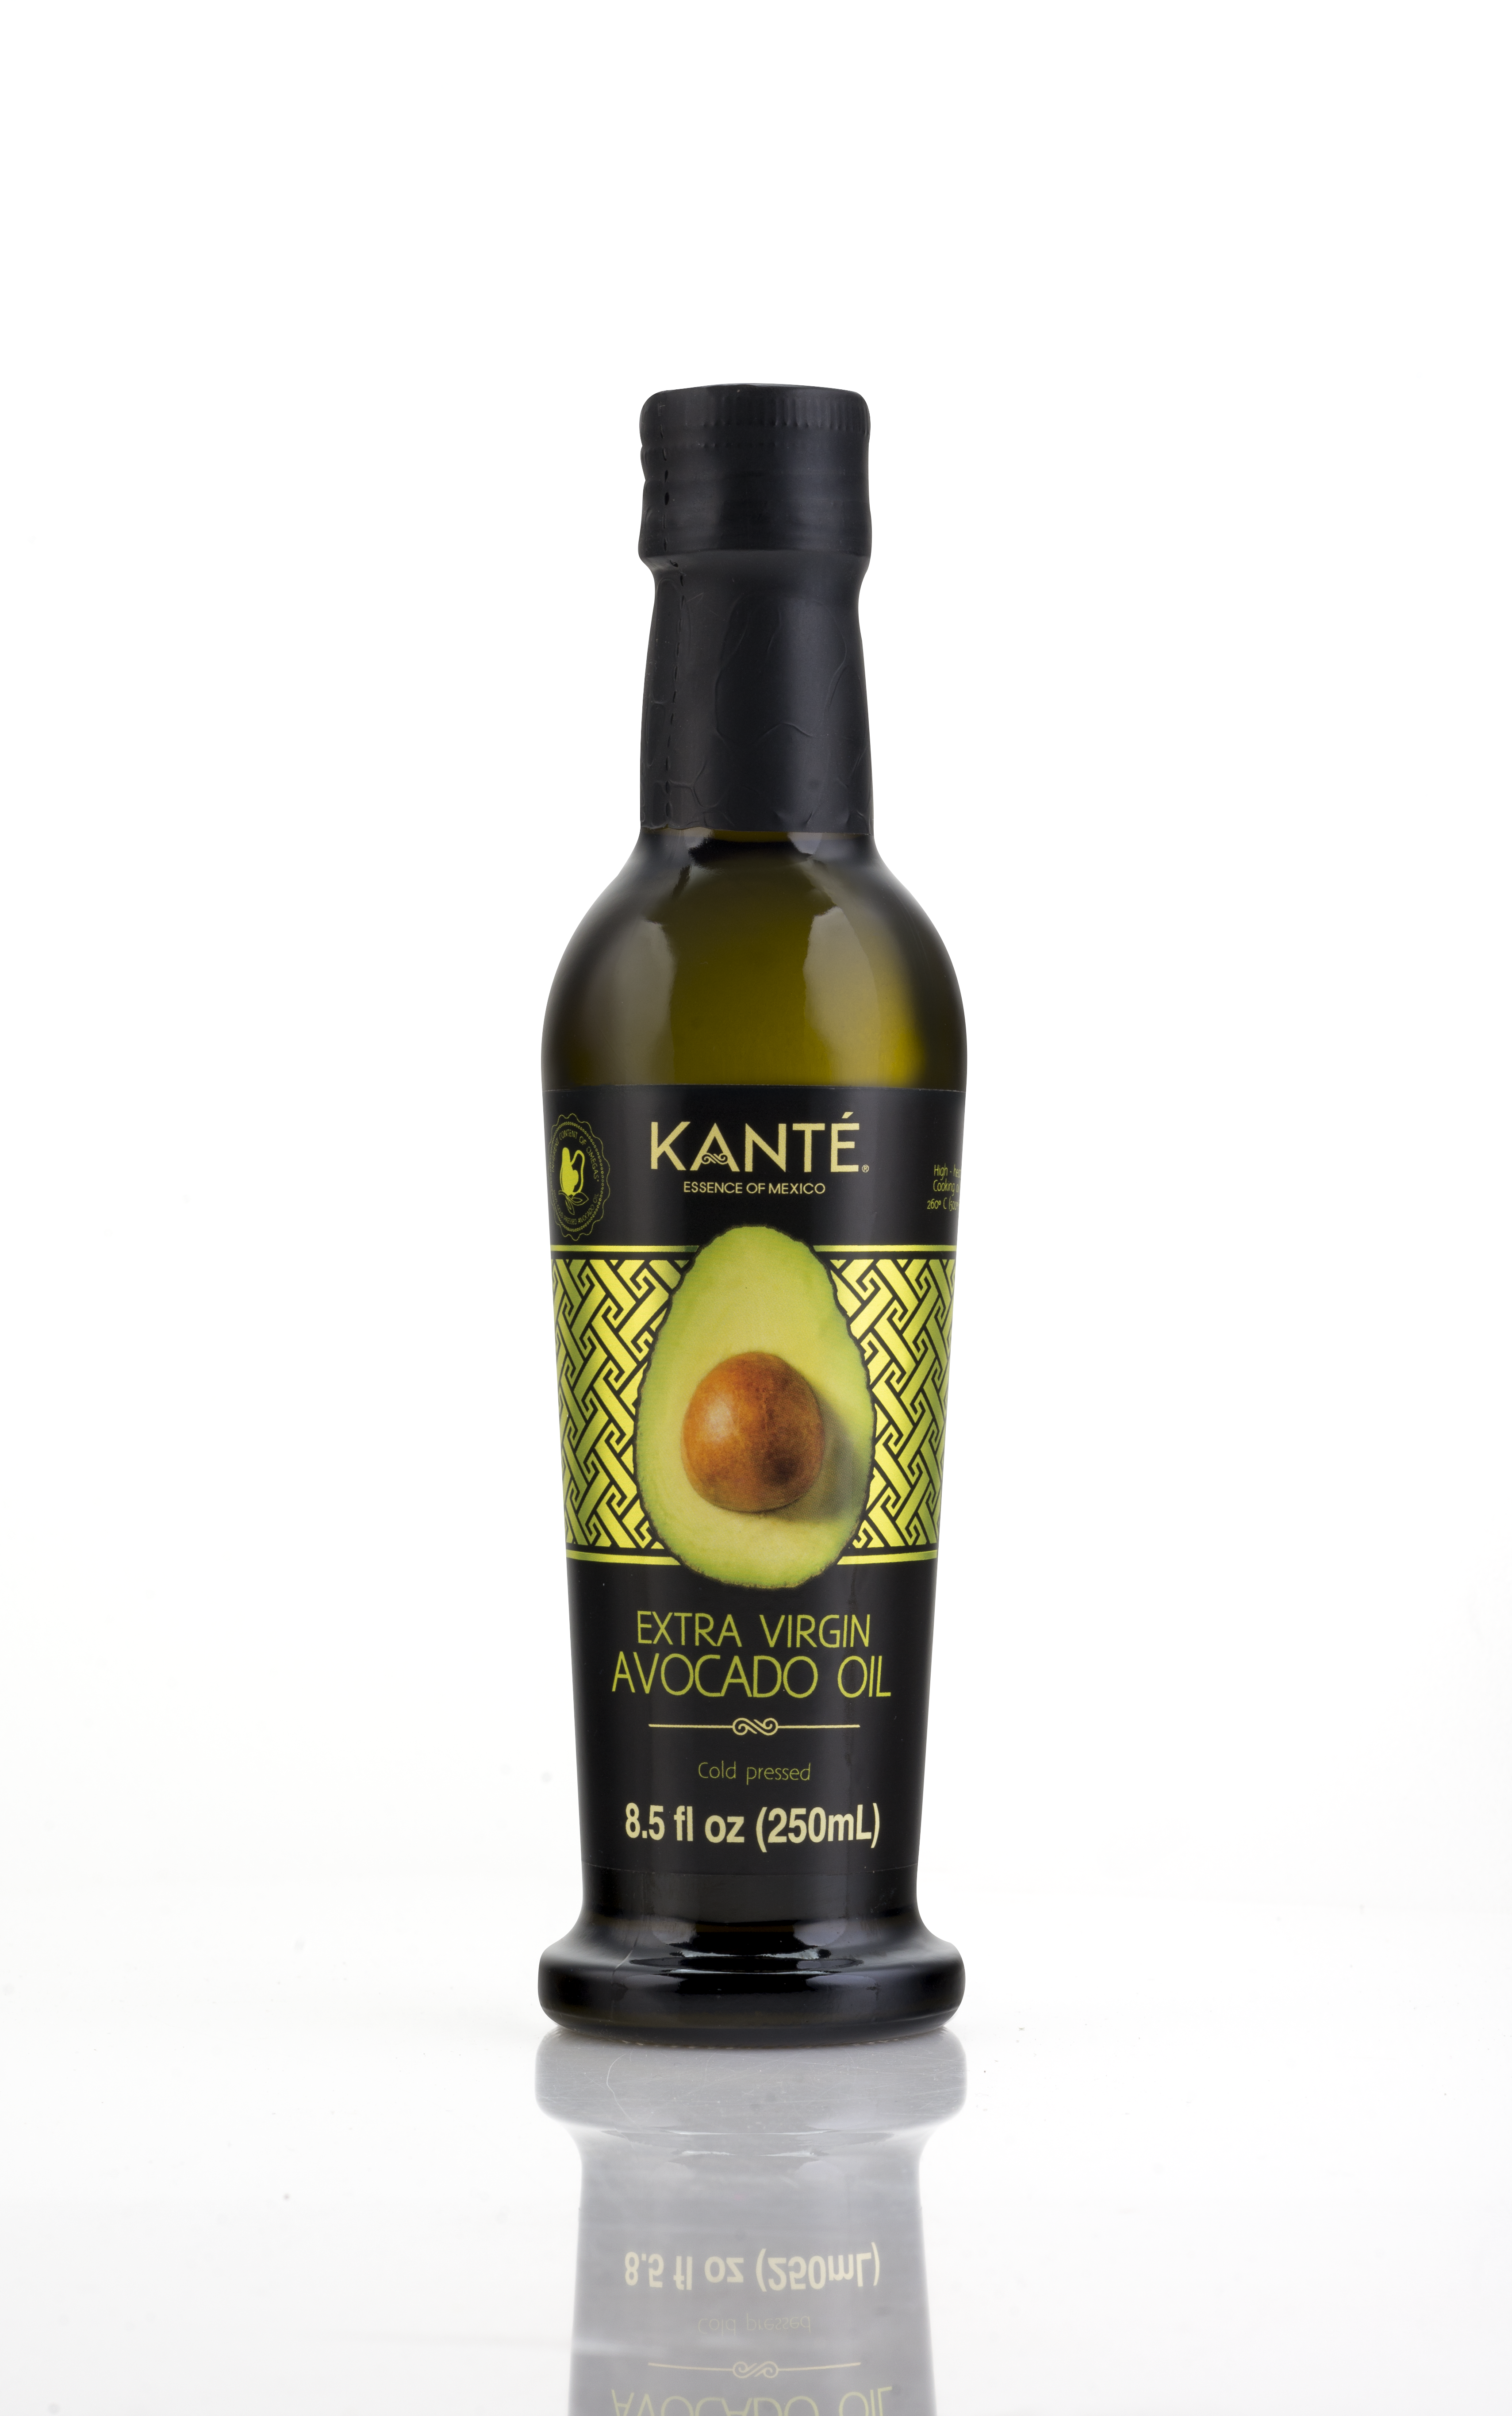 Kante Extra Virgin Avocado Oil 12 units per case